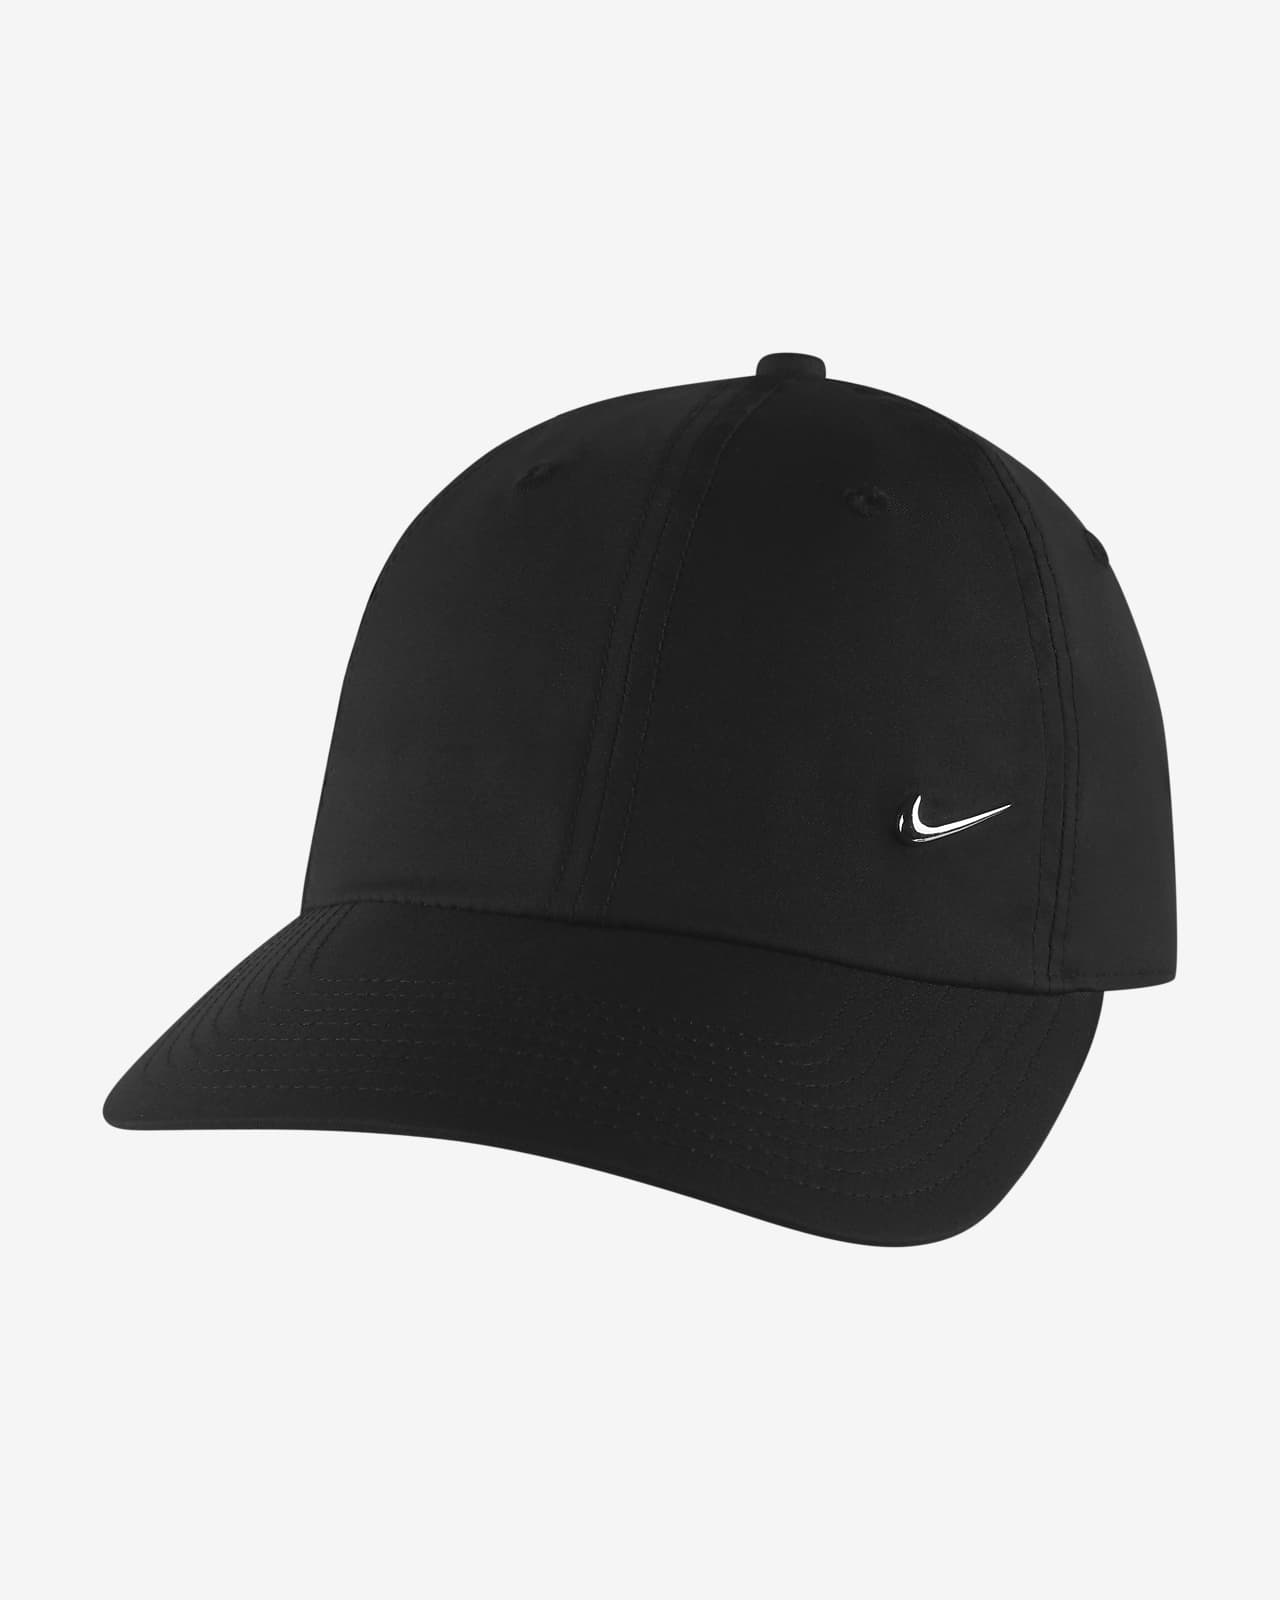 Nike Sportswear Heritage 86 帽款。nike Tw